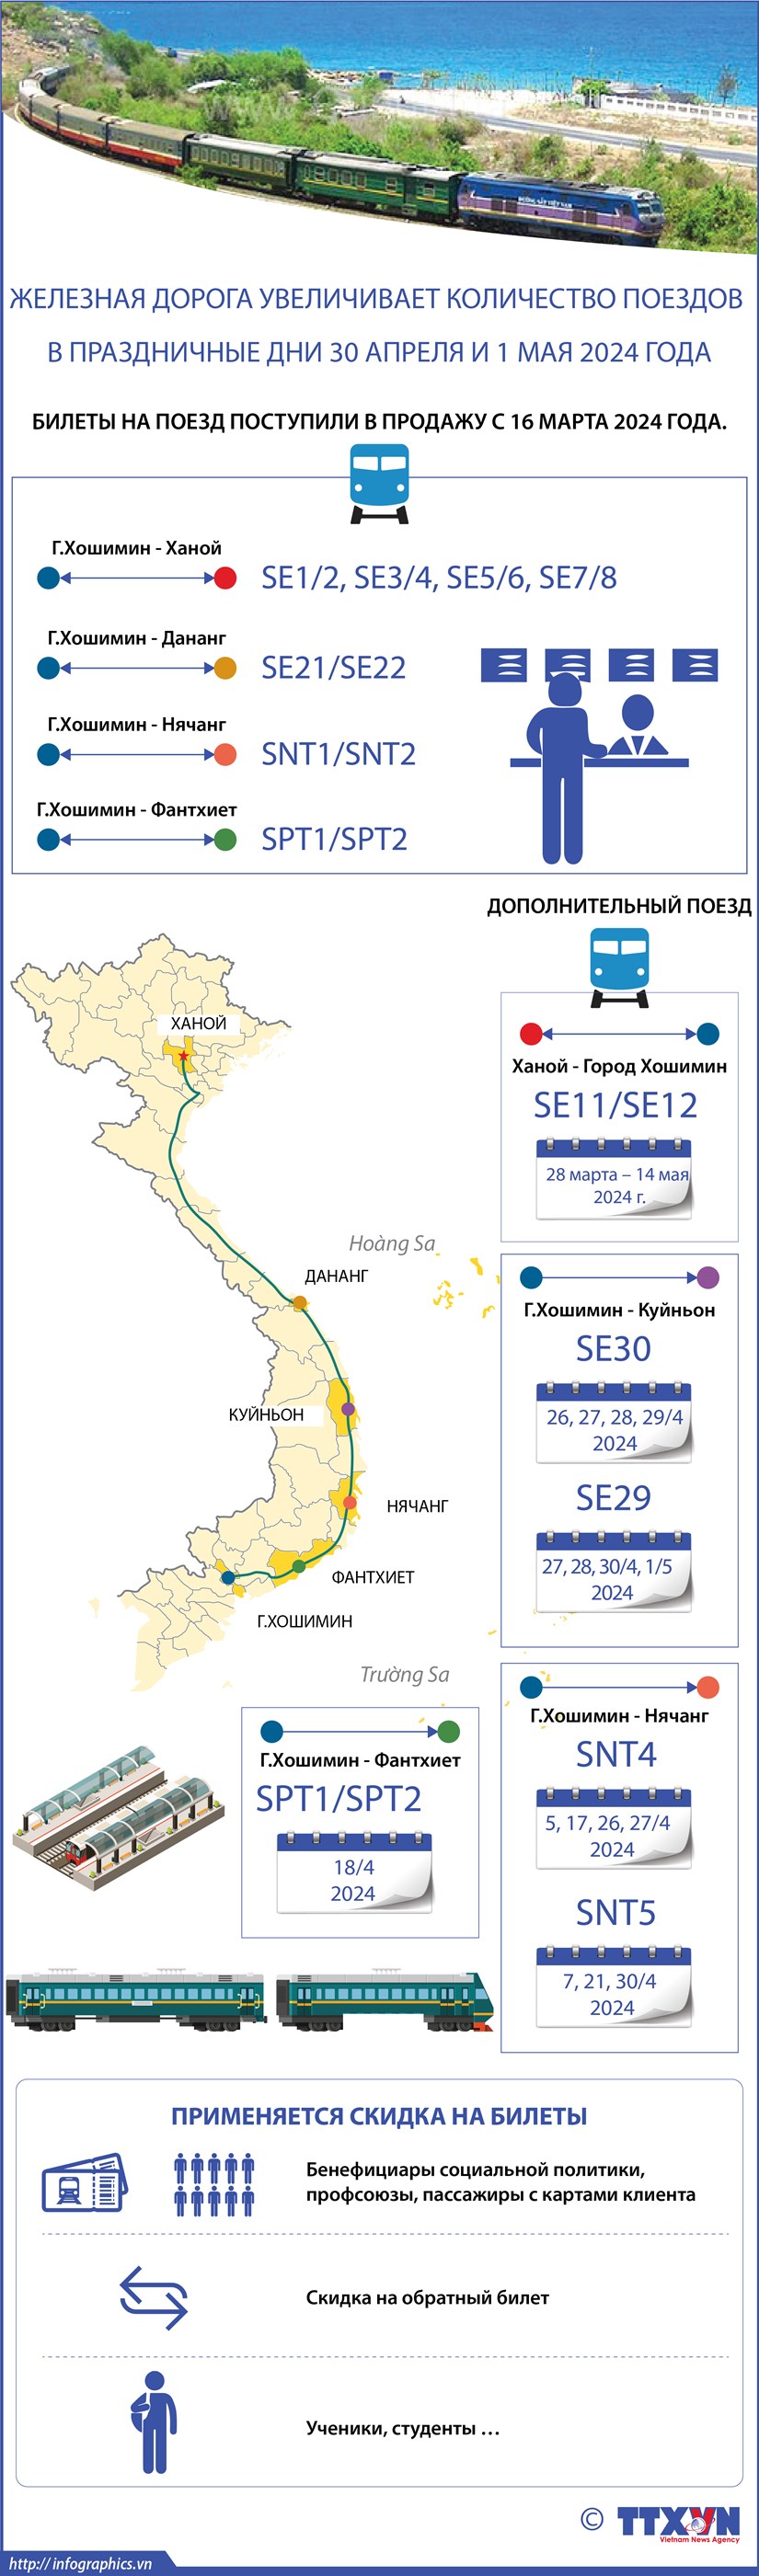 Железная дорога увеличивает количество поездов в праздничные дни 30 апреля и 1 мая 2024 года hinh anh 1